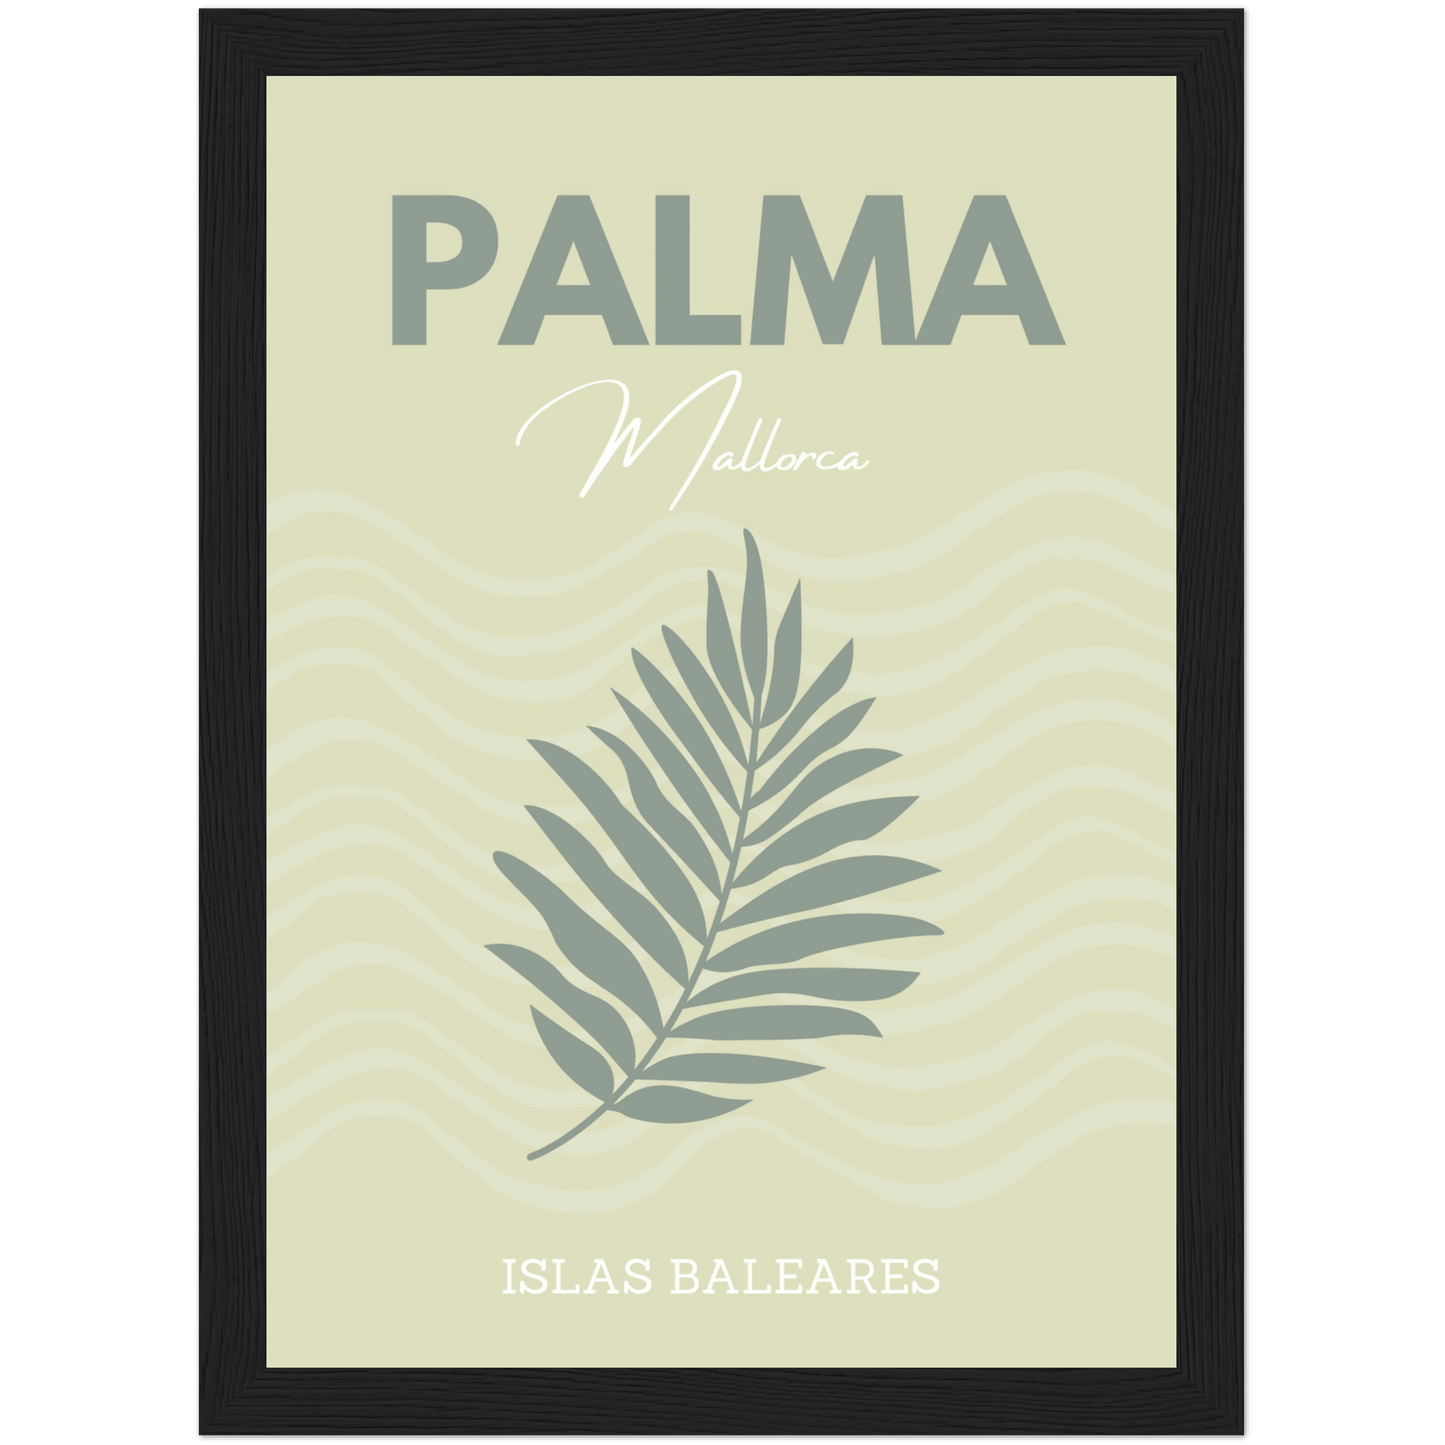 Palma - A4, A3, A2 Posters Base - Poster Print Shop / Art Prints / PostersBase